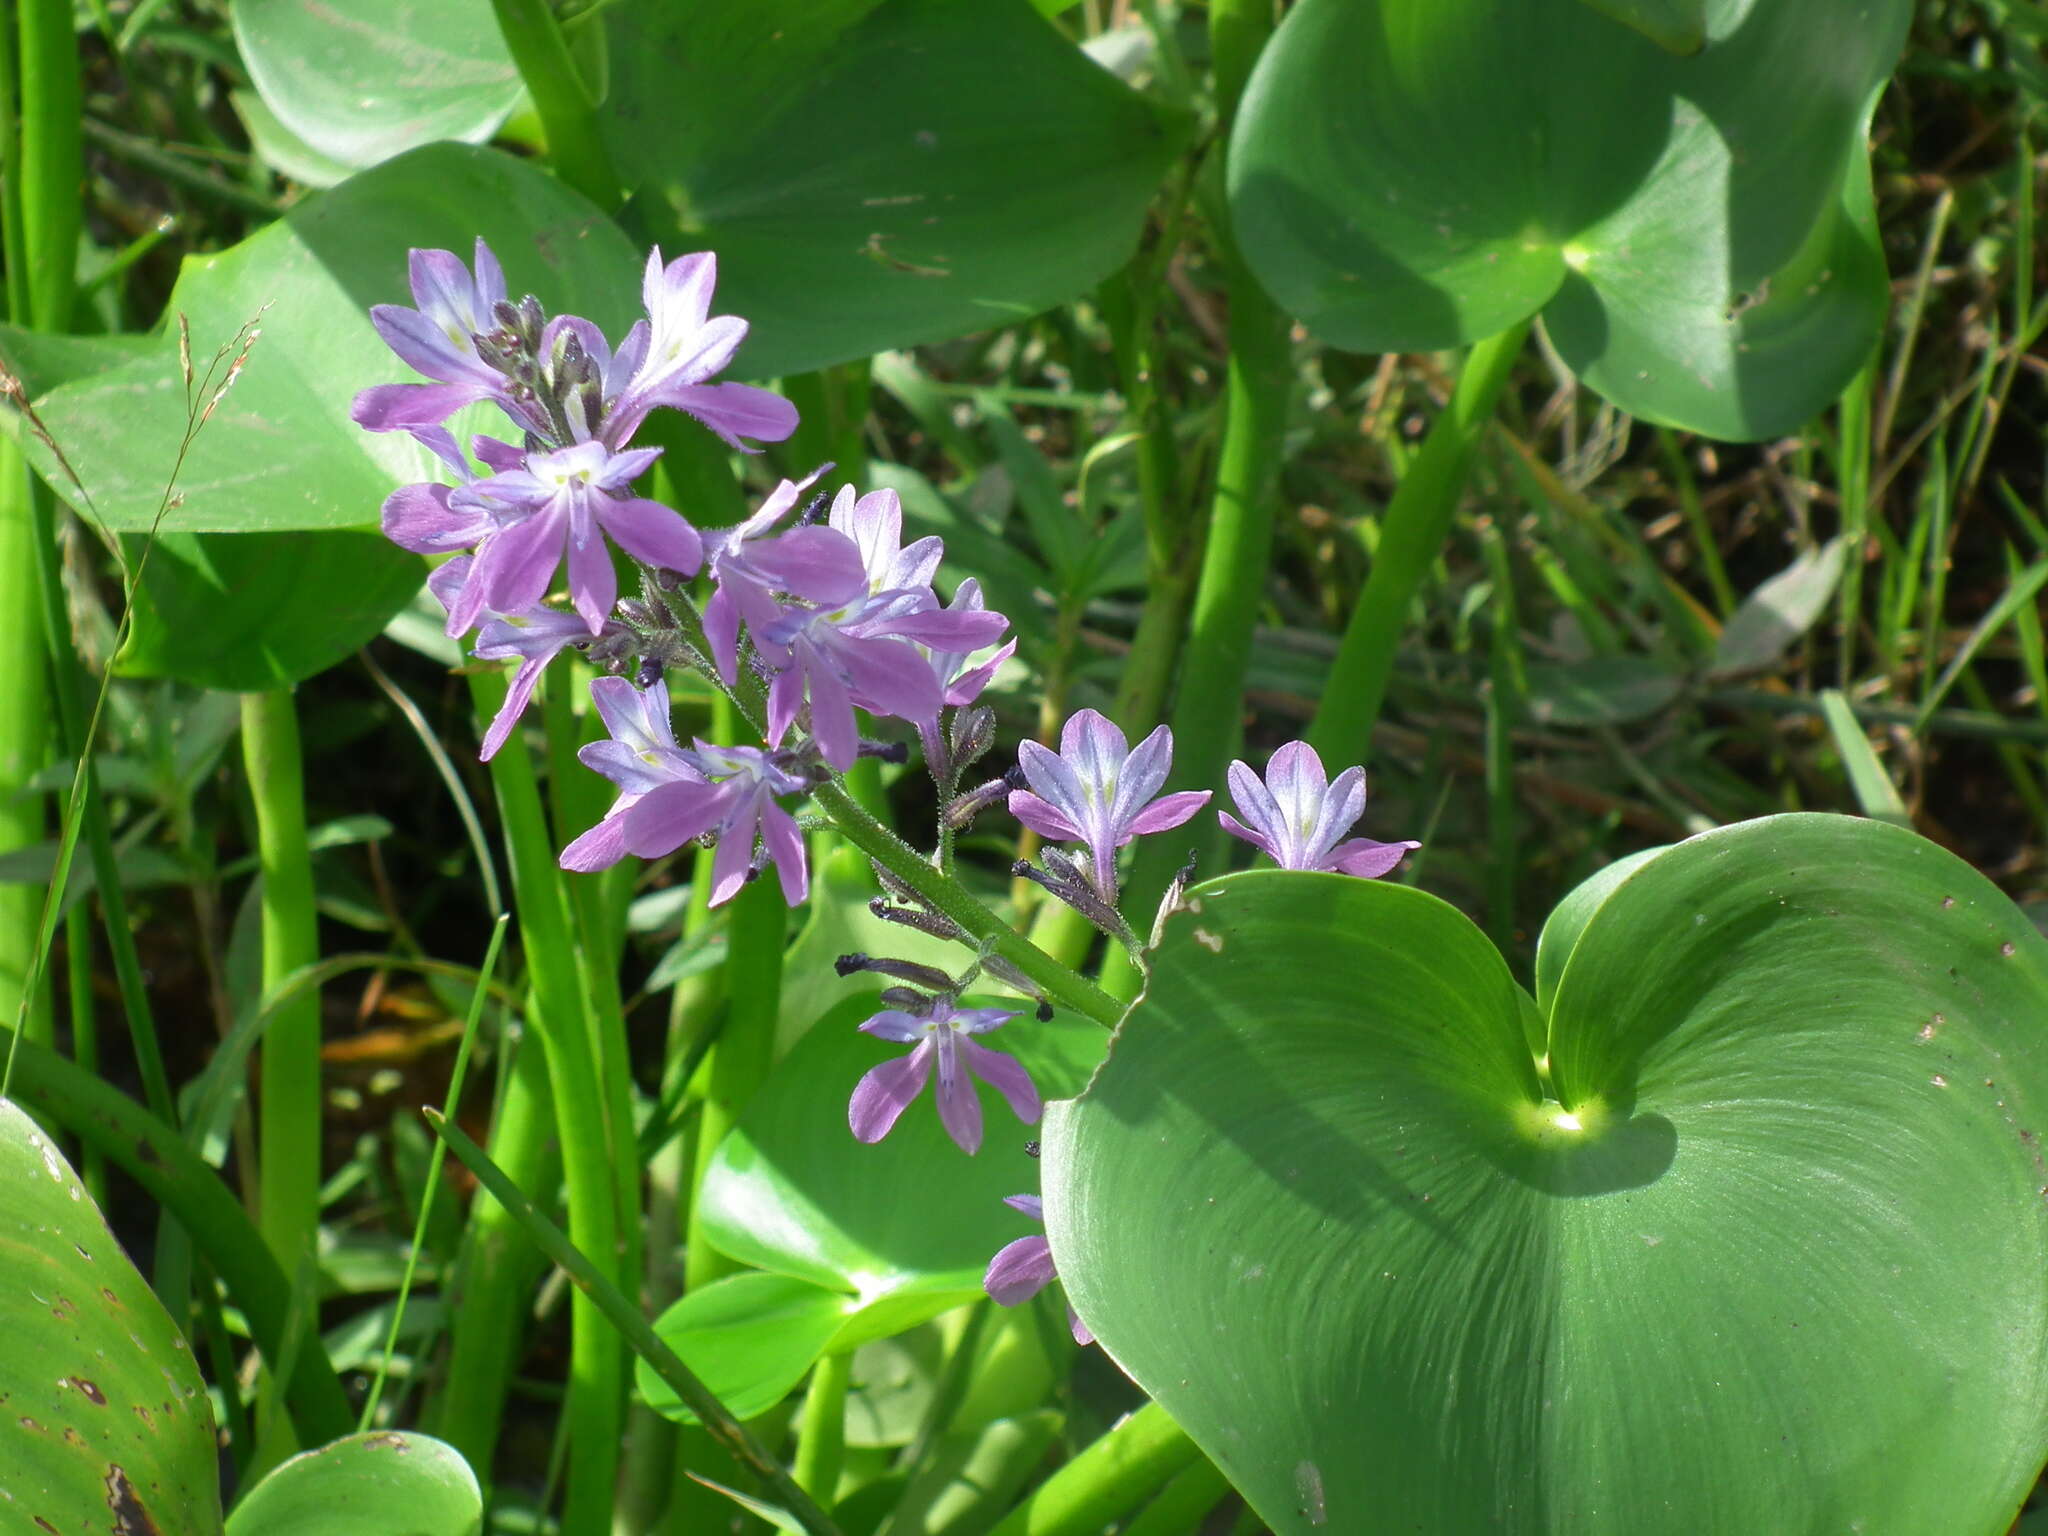 Image of Brazilian Water-Hyacinth